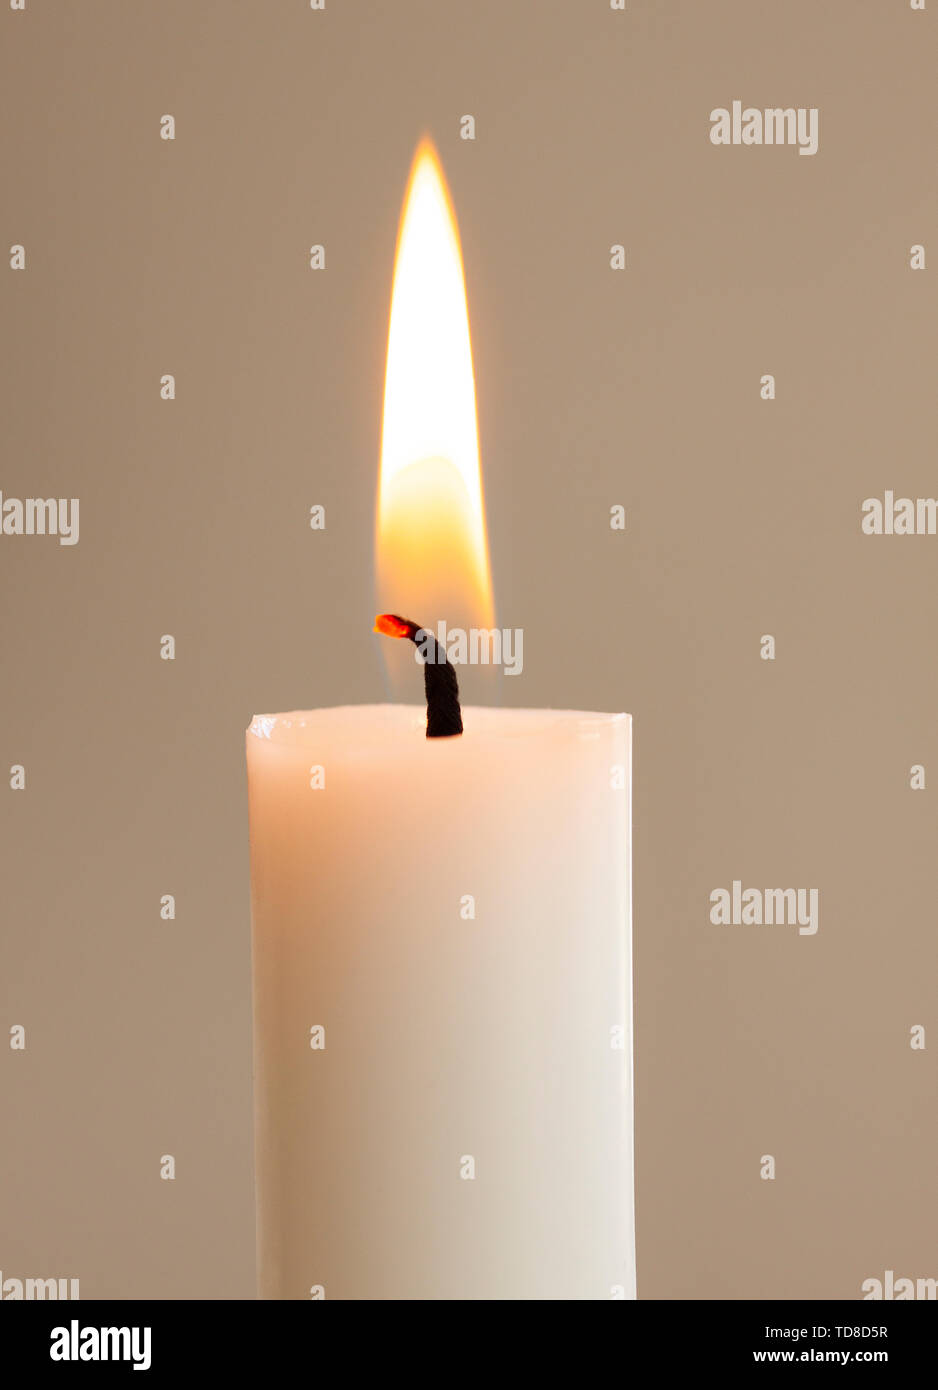 Burning candle light close up on white background Stock Photo - Alamy